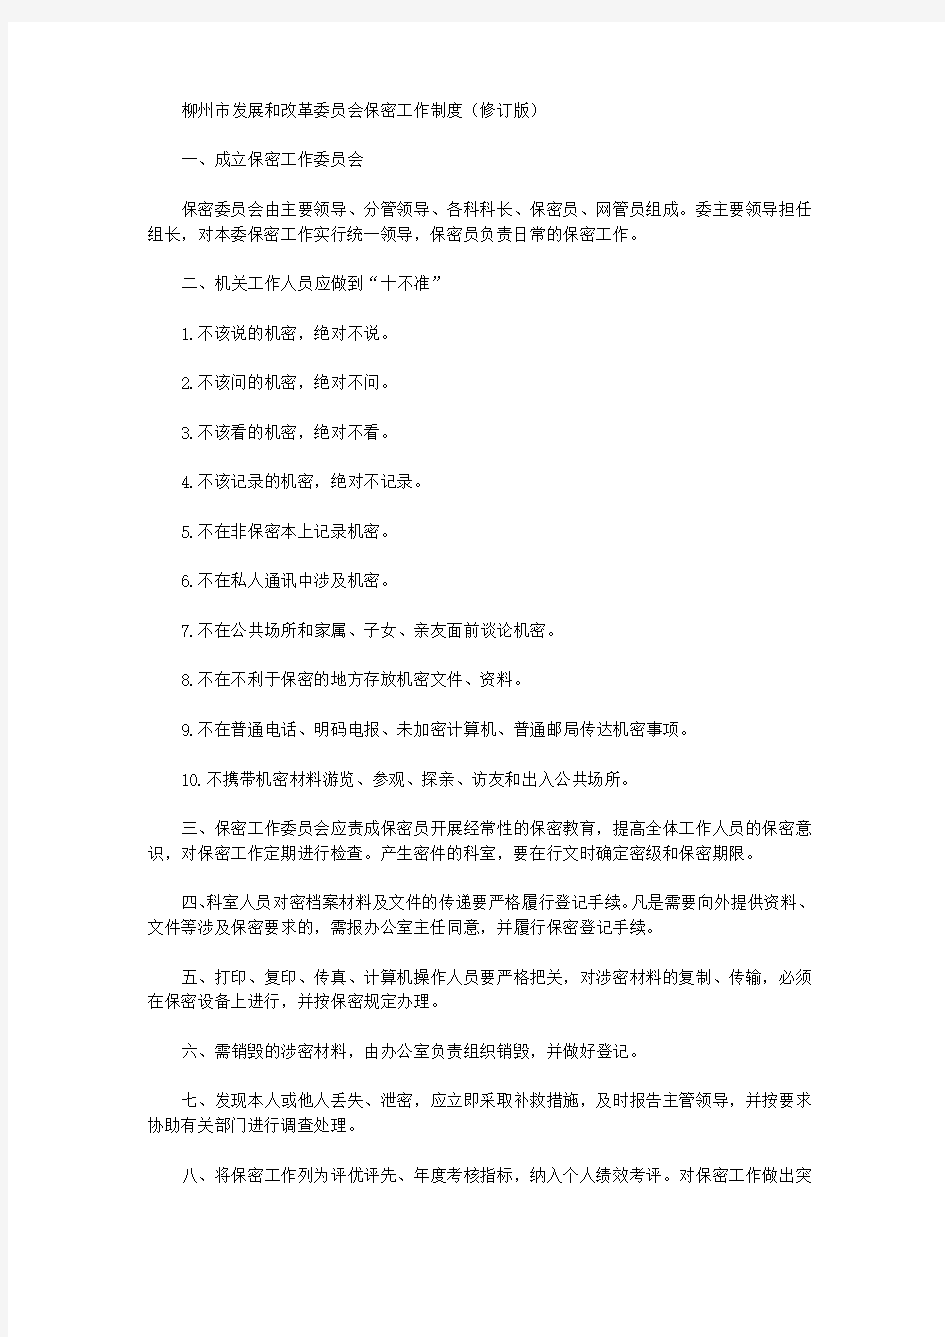 柳州市发展和改革委员会保密工作制度(修订版)